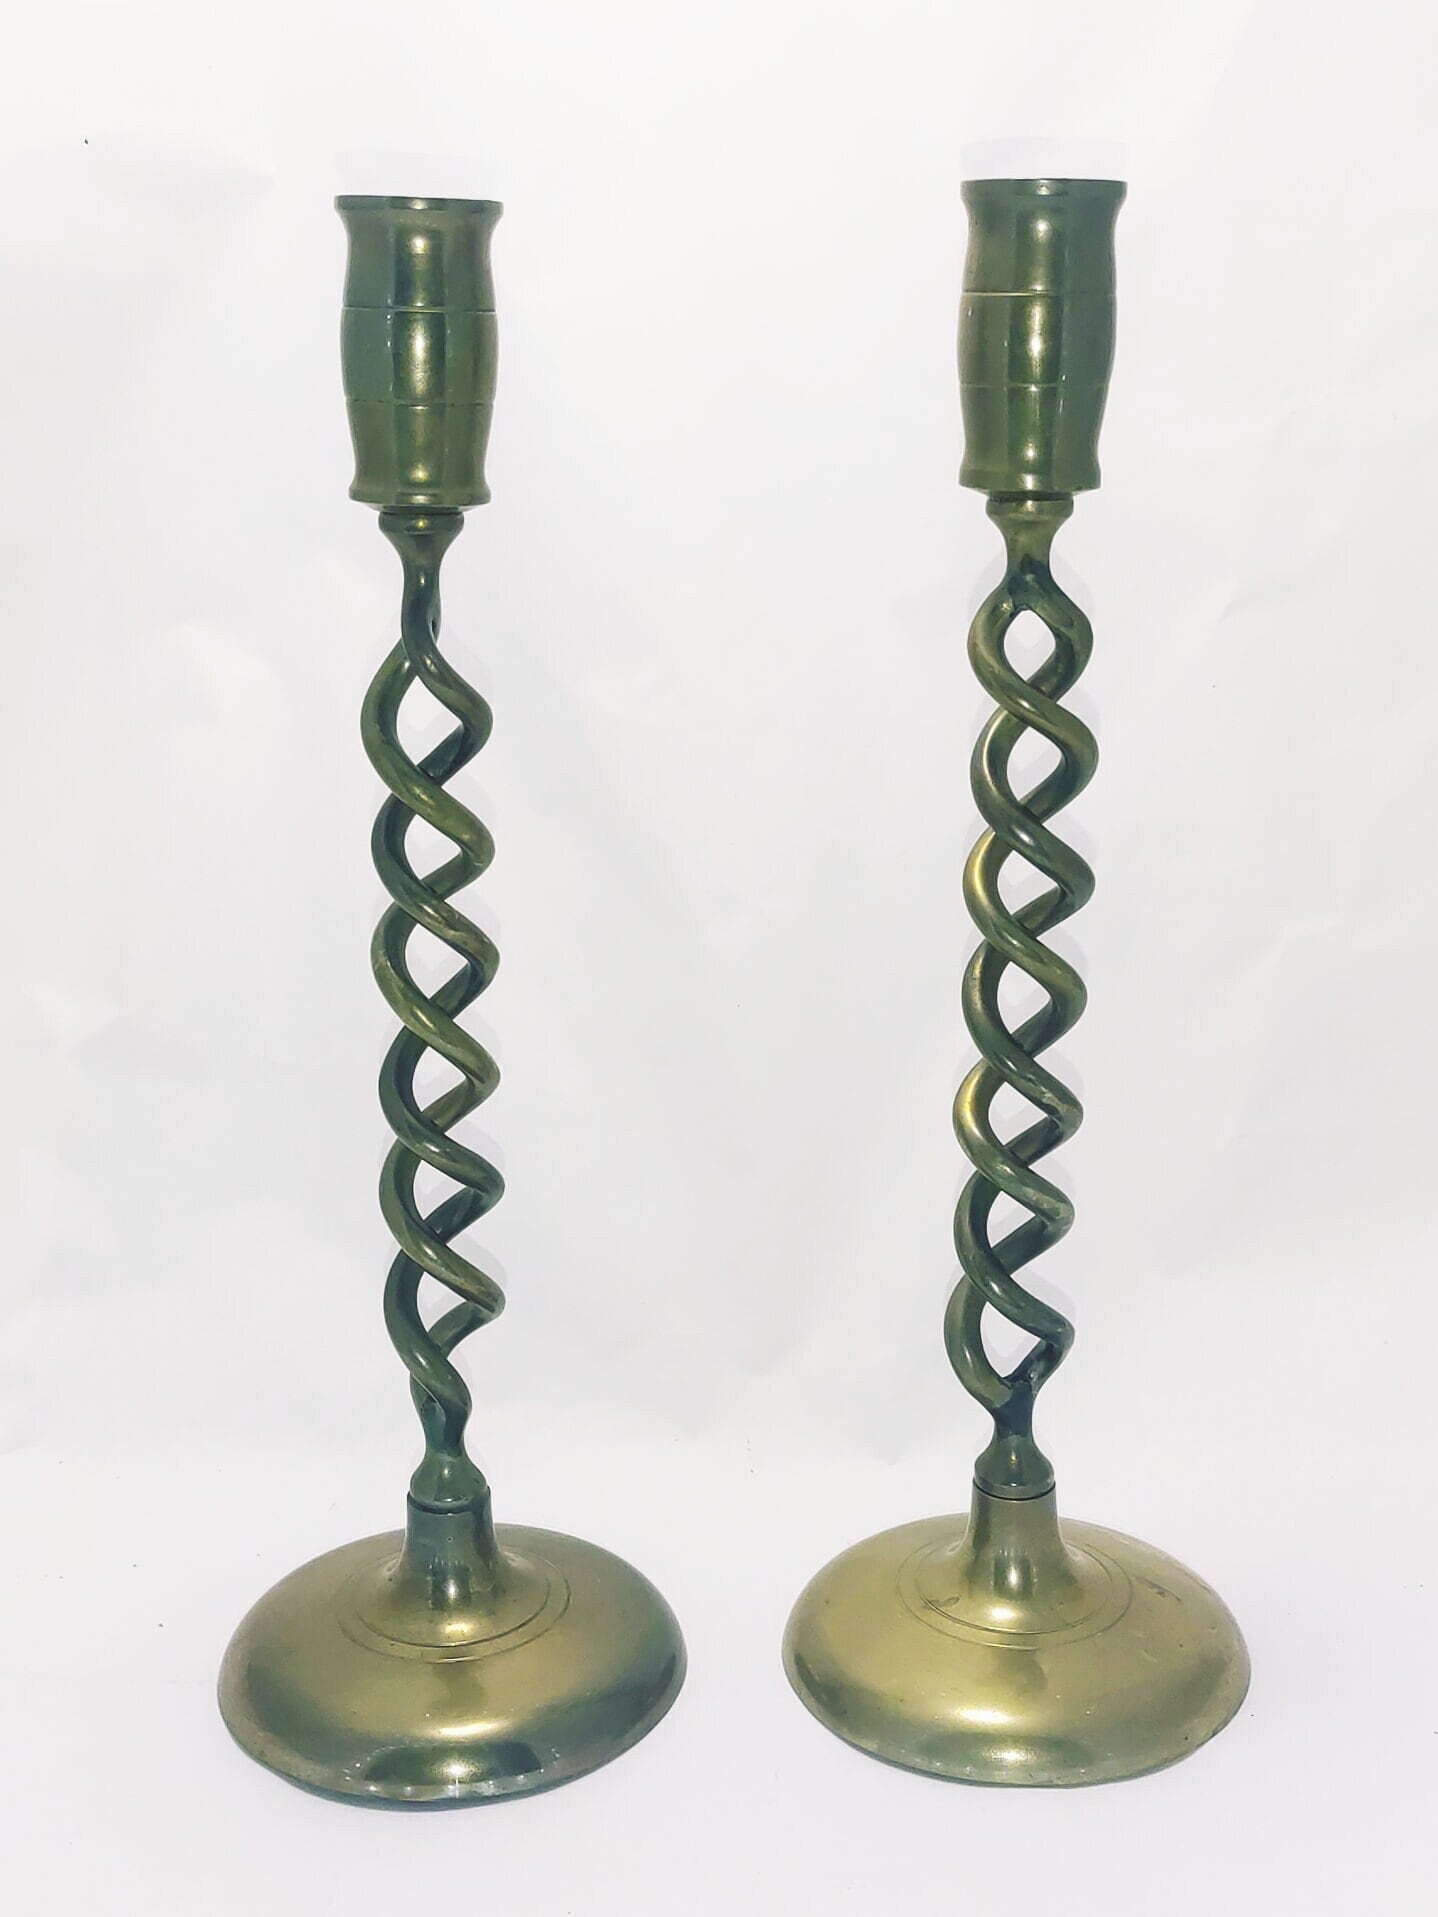 Victorian Solid Brass Barley Twist Candlesticks, Circa 1880-1900